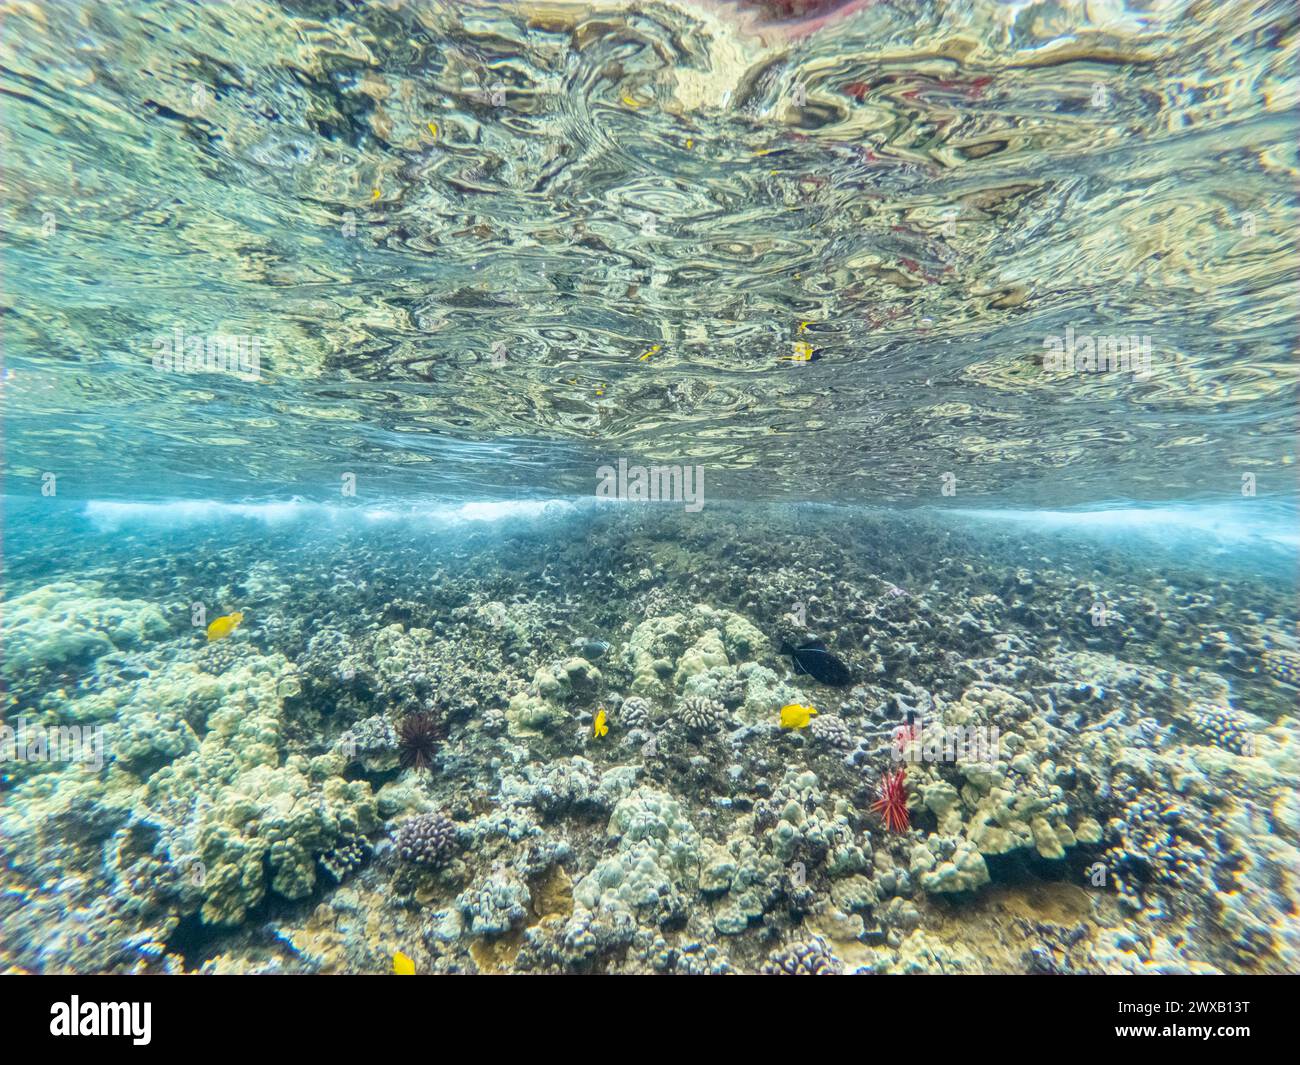 Una vista submarina de un arrecife de coral poco profundo en aguas cristalinas. Molokini Crater Maui Hawaii. Foto de stock